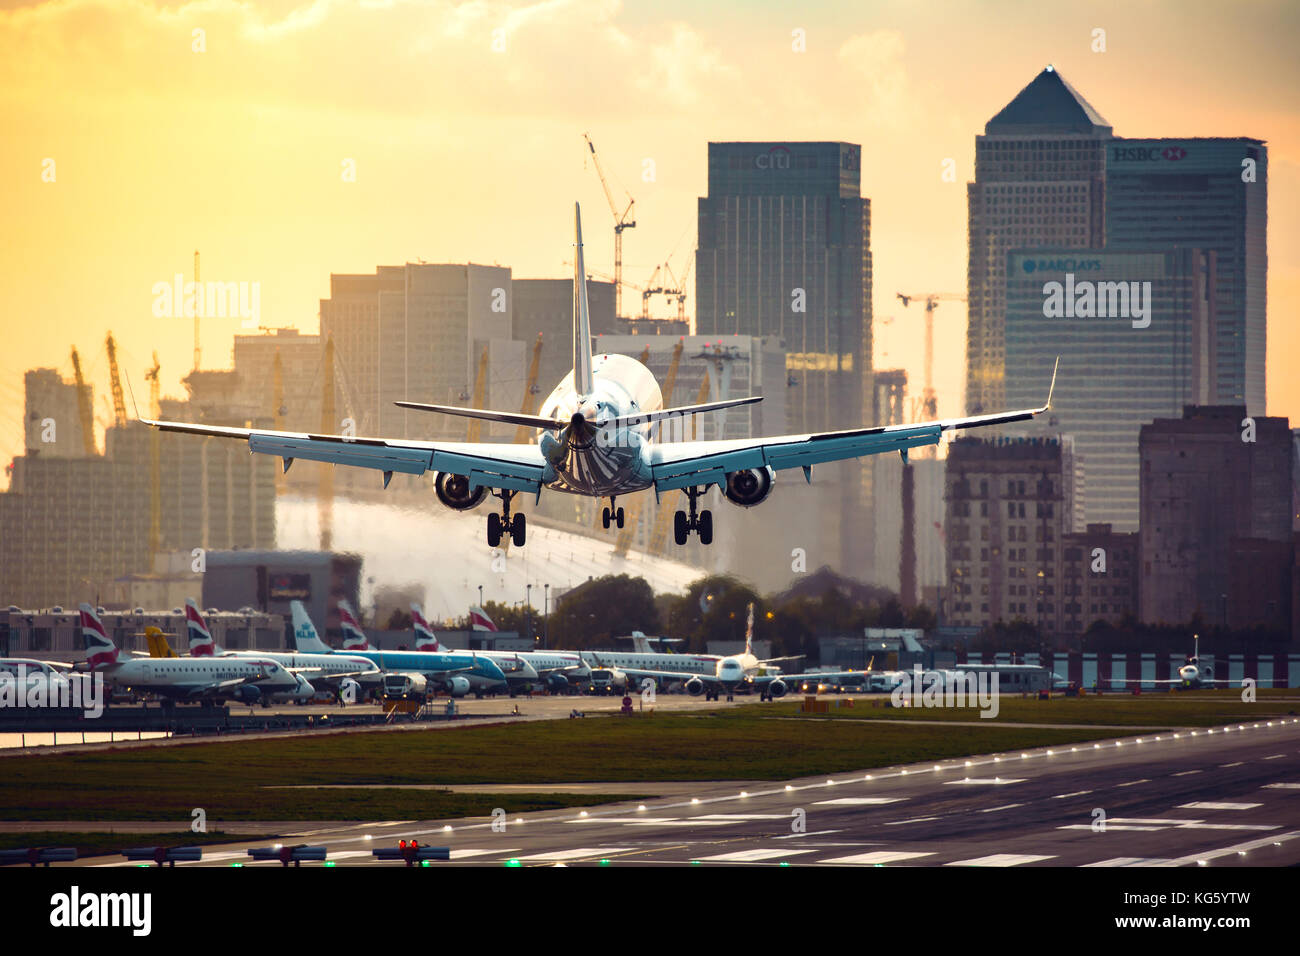 L'aéroport de London City - Eastern Airways Embraer ERJ-170LR (g-cixw) à l'atterrissage à beau coucher du soleil Banque D'Images